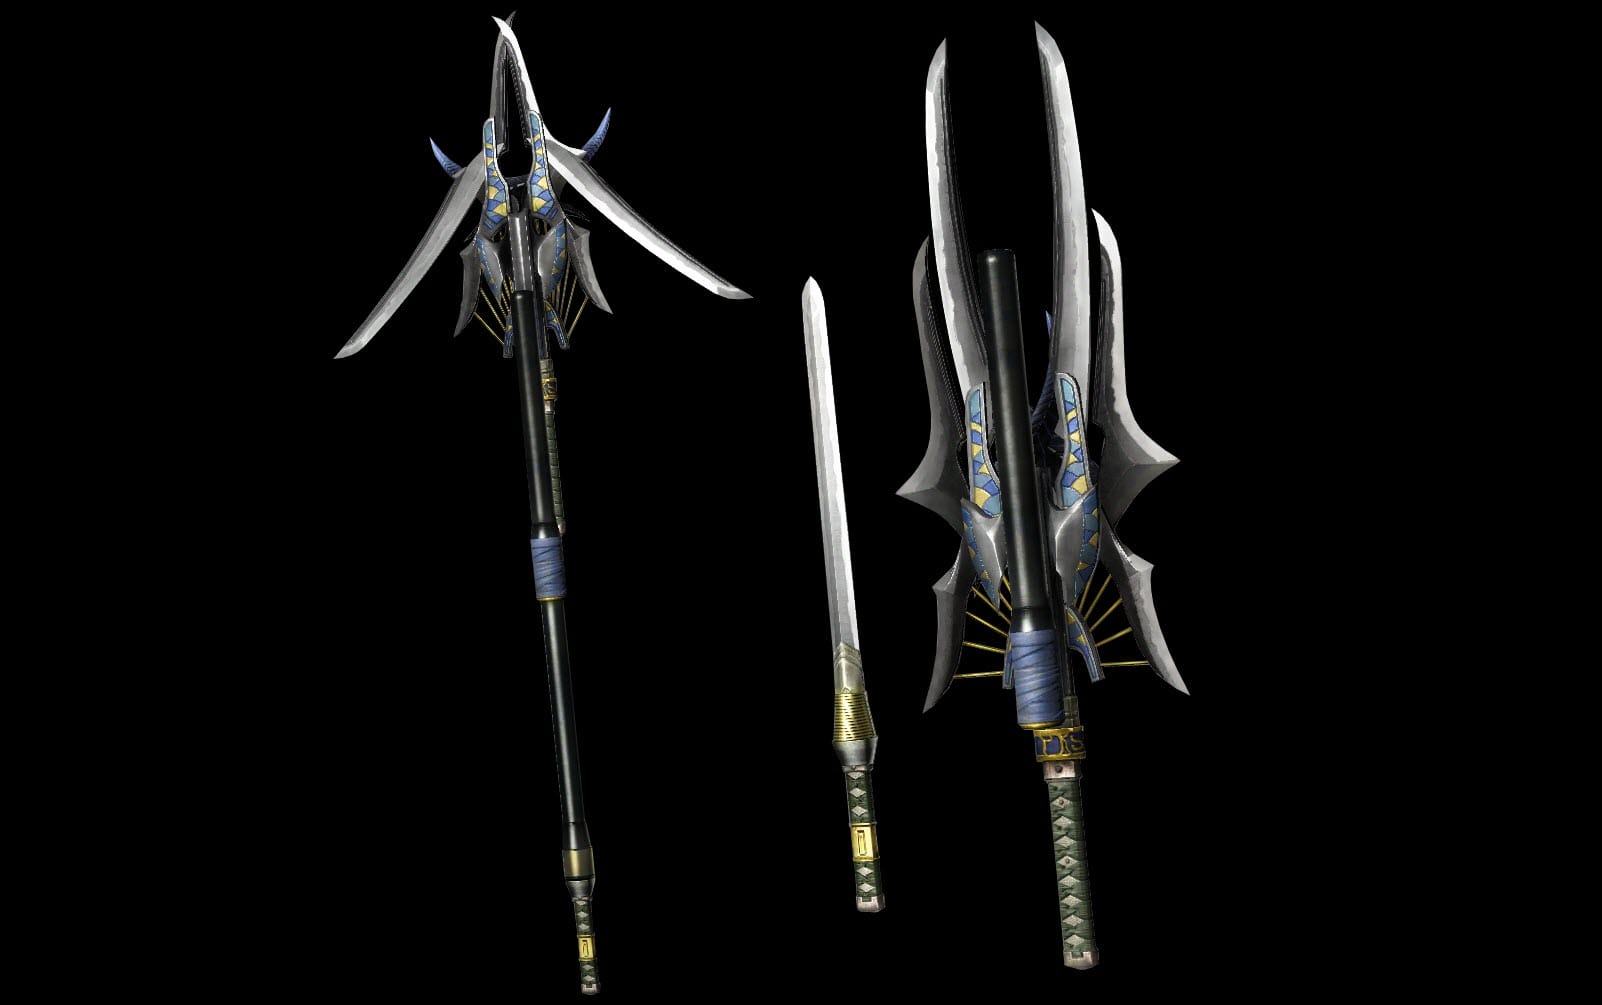 Muramasa (weapon), Final Fantasy Wiki